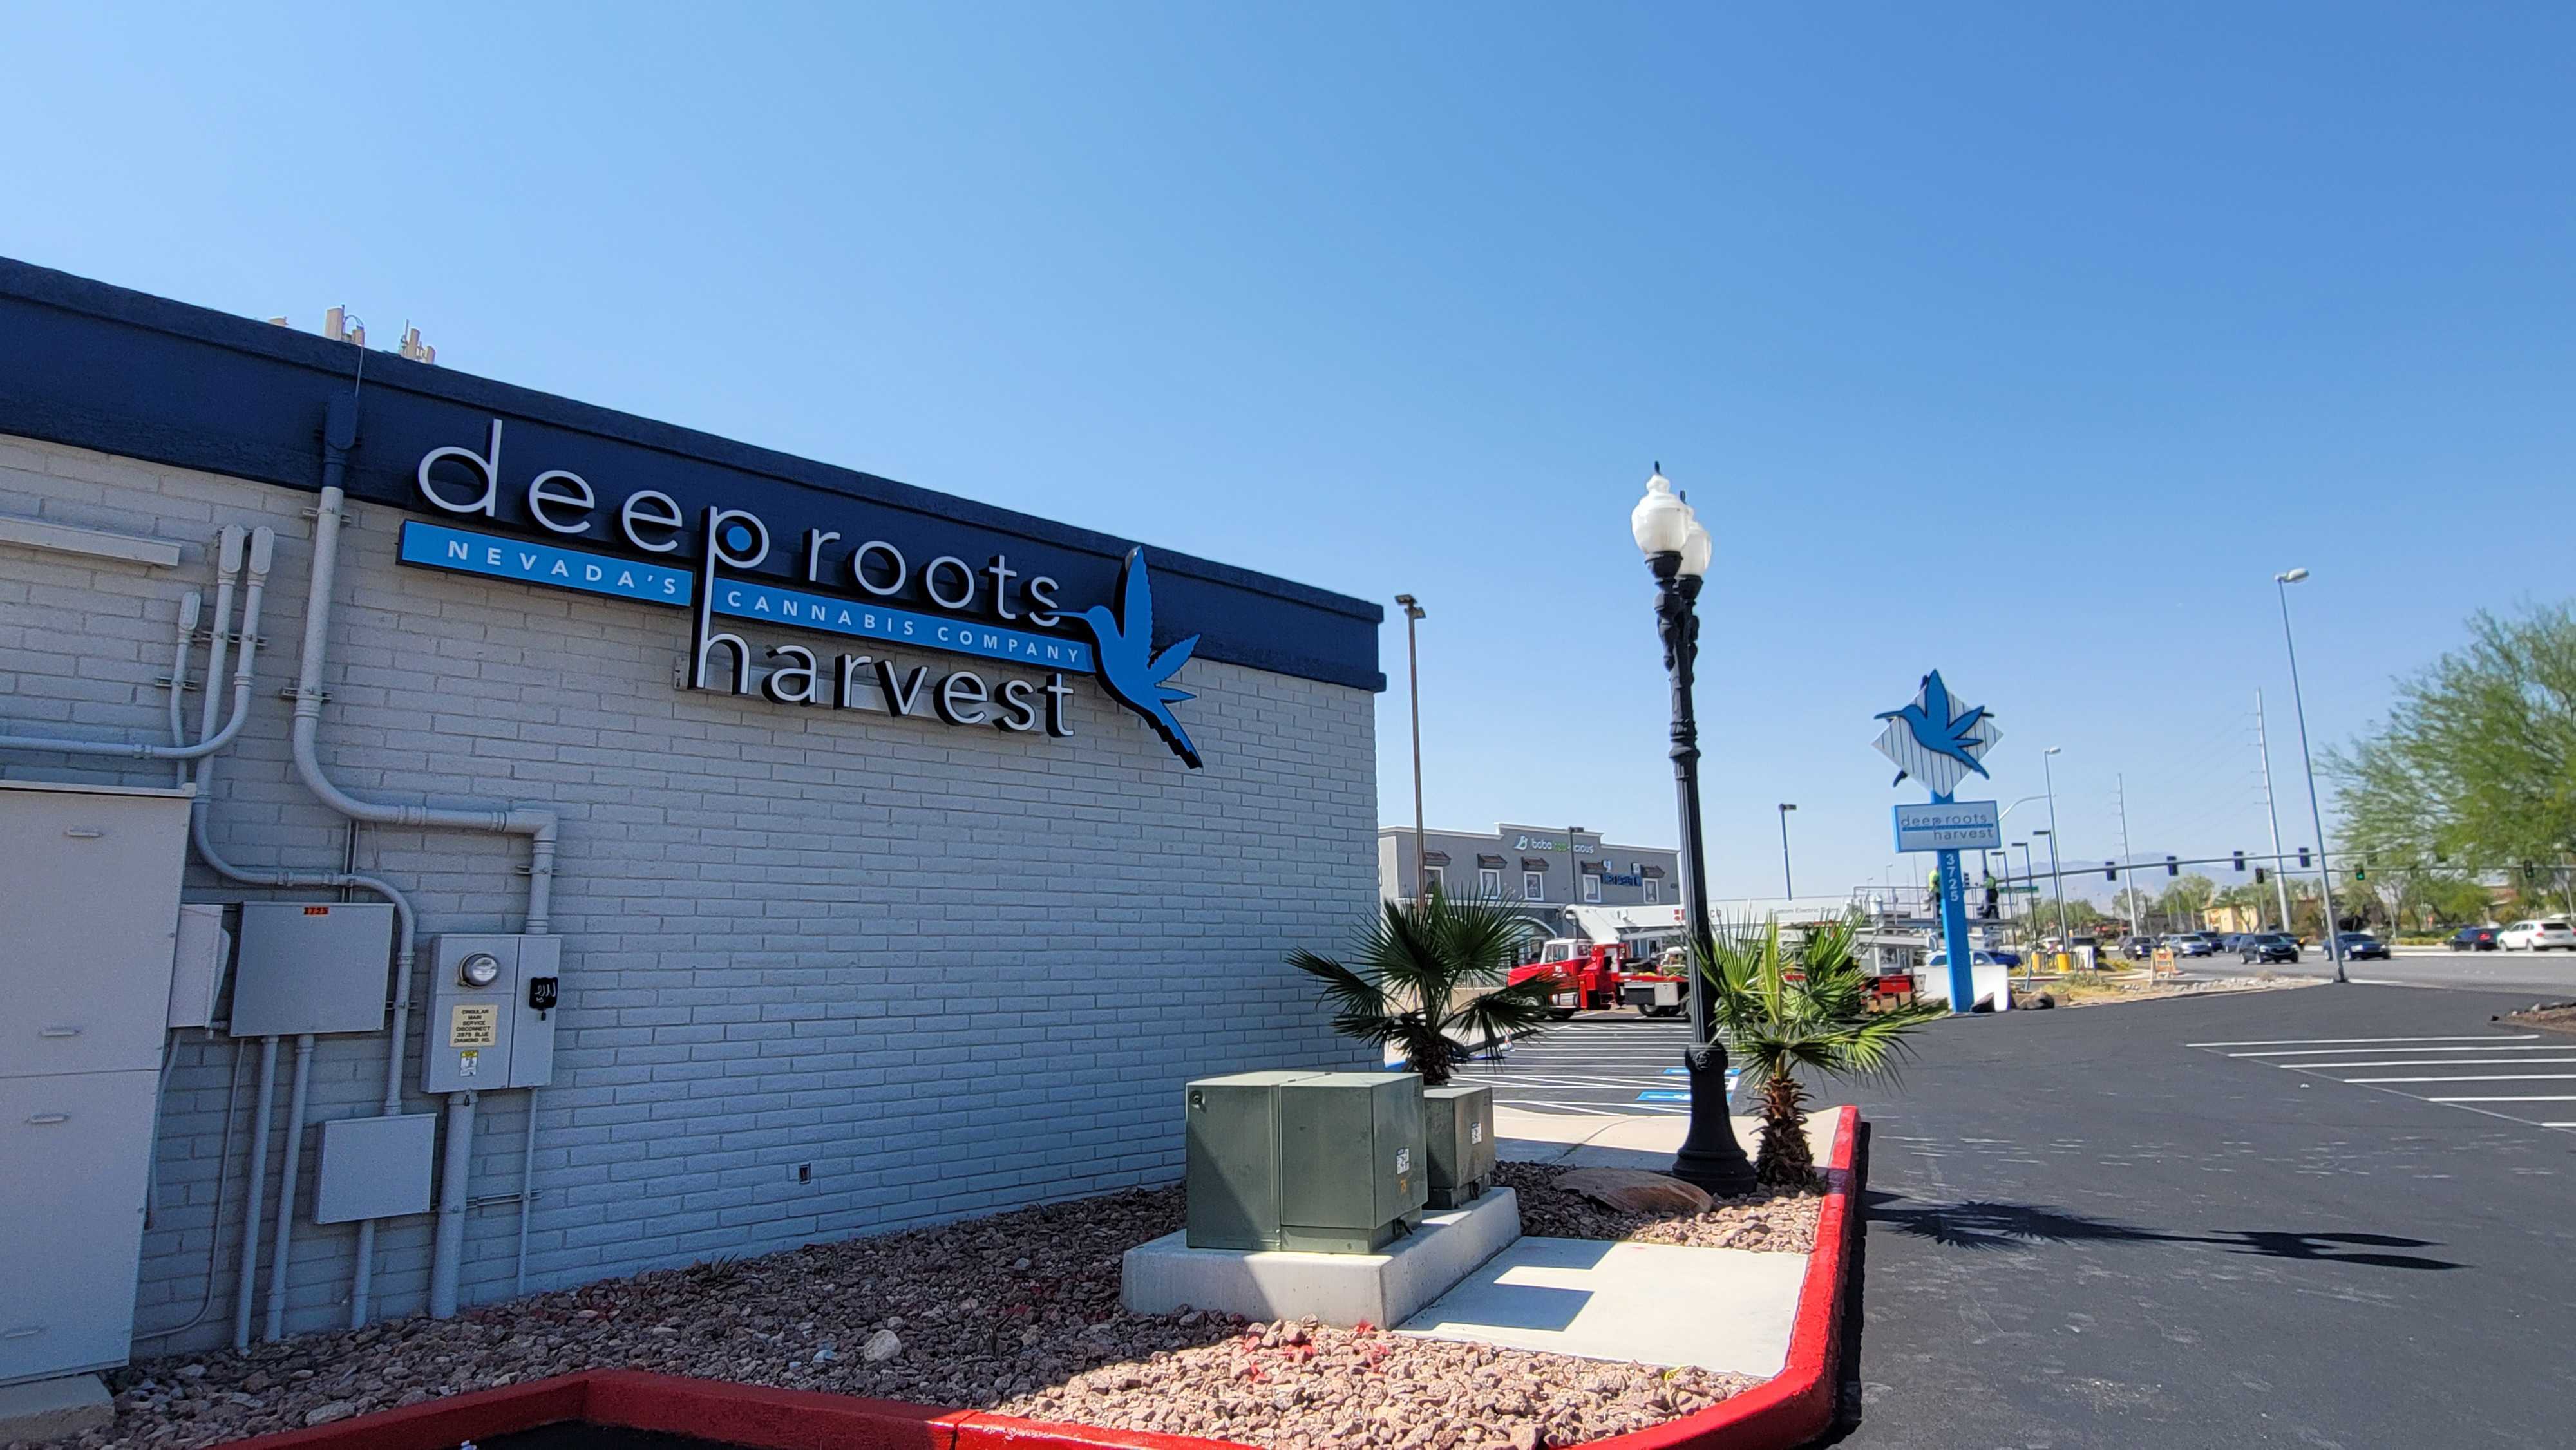 Deep Roots Harvest - Blue Diamond | Las Vegas, NV Dispensary | Leafly